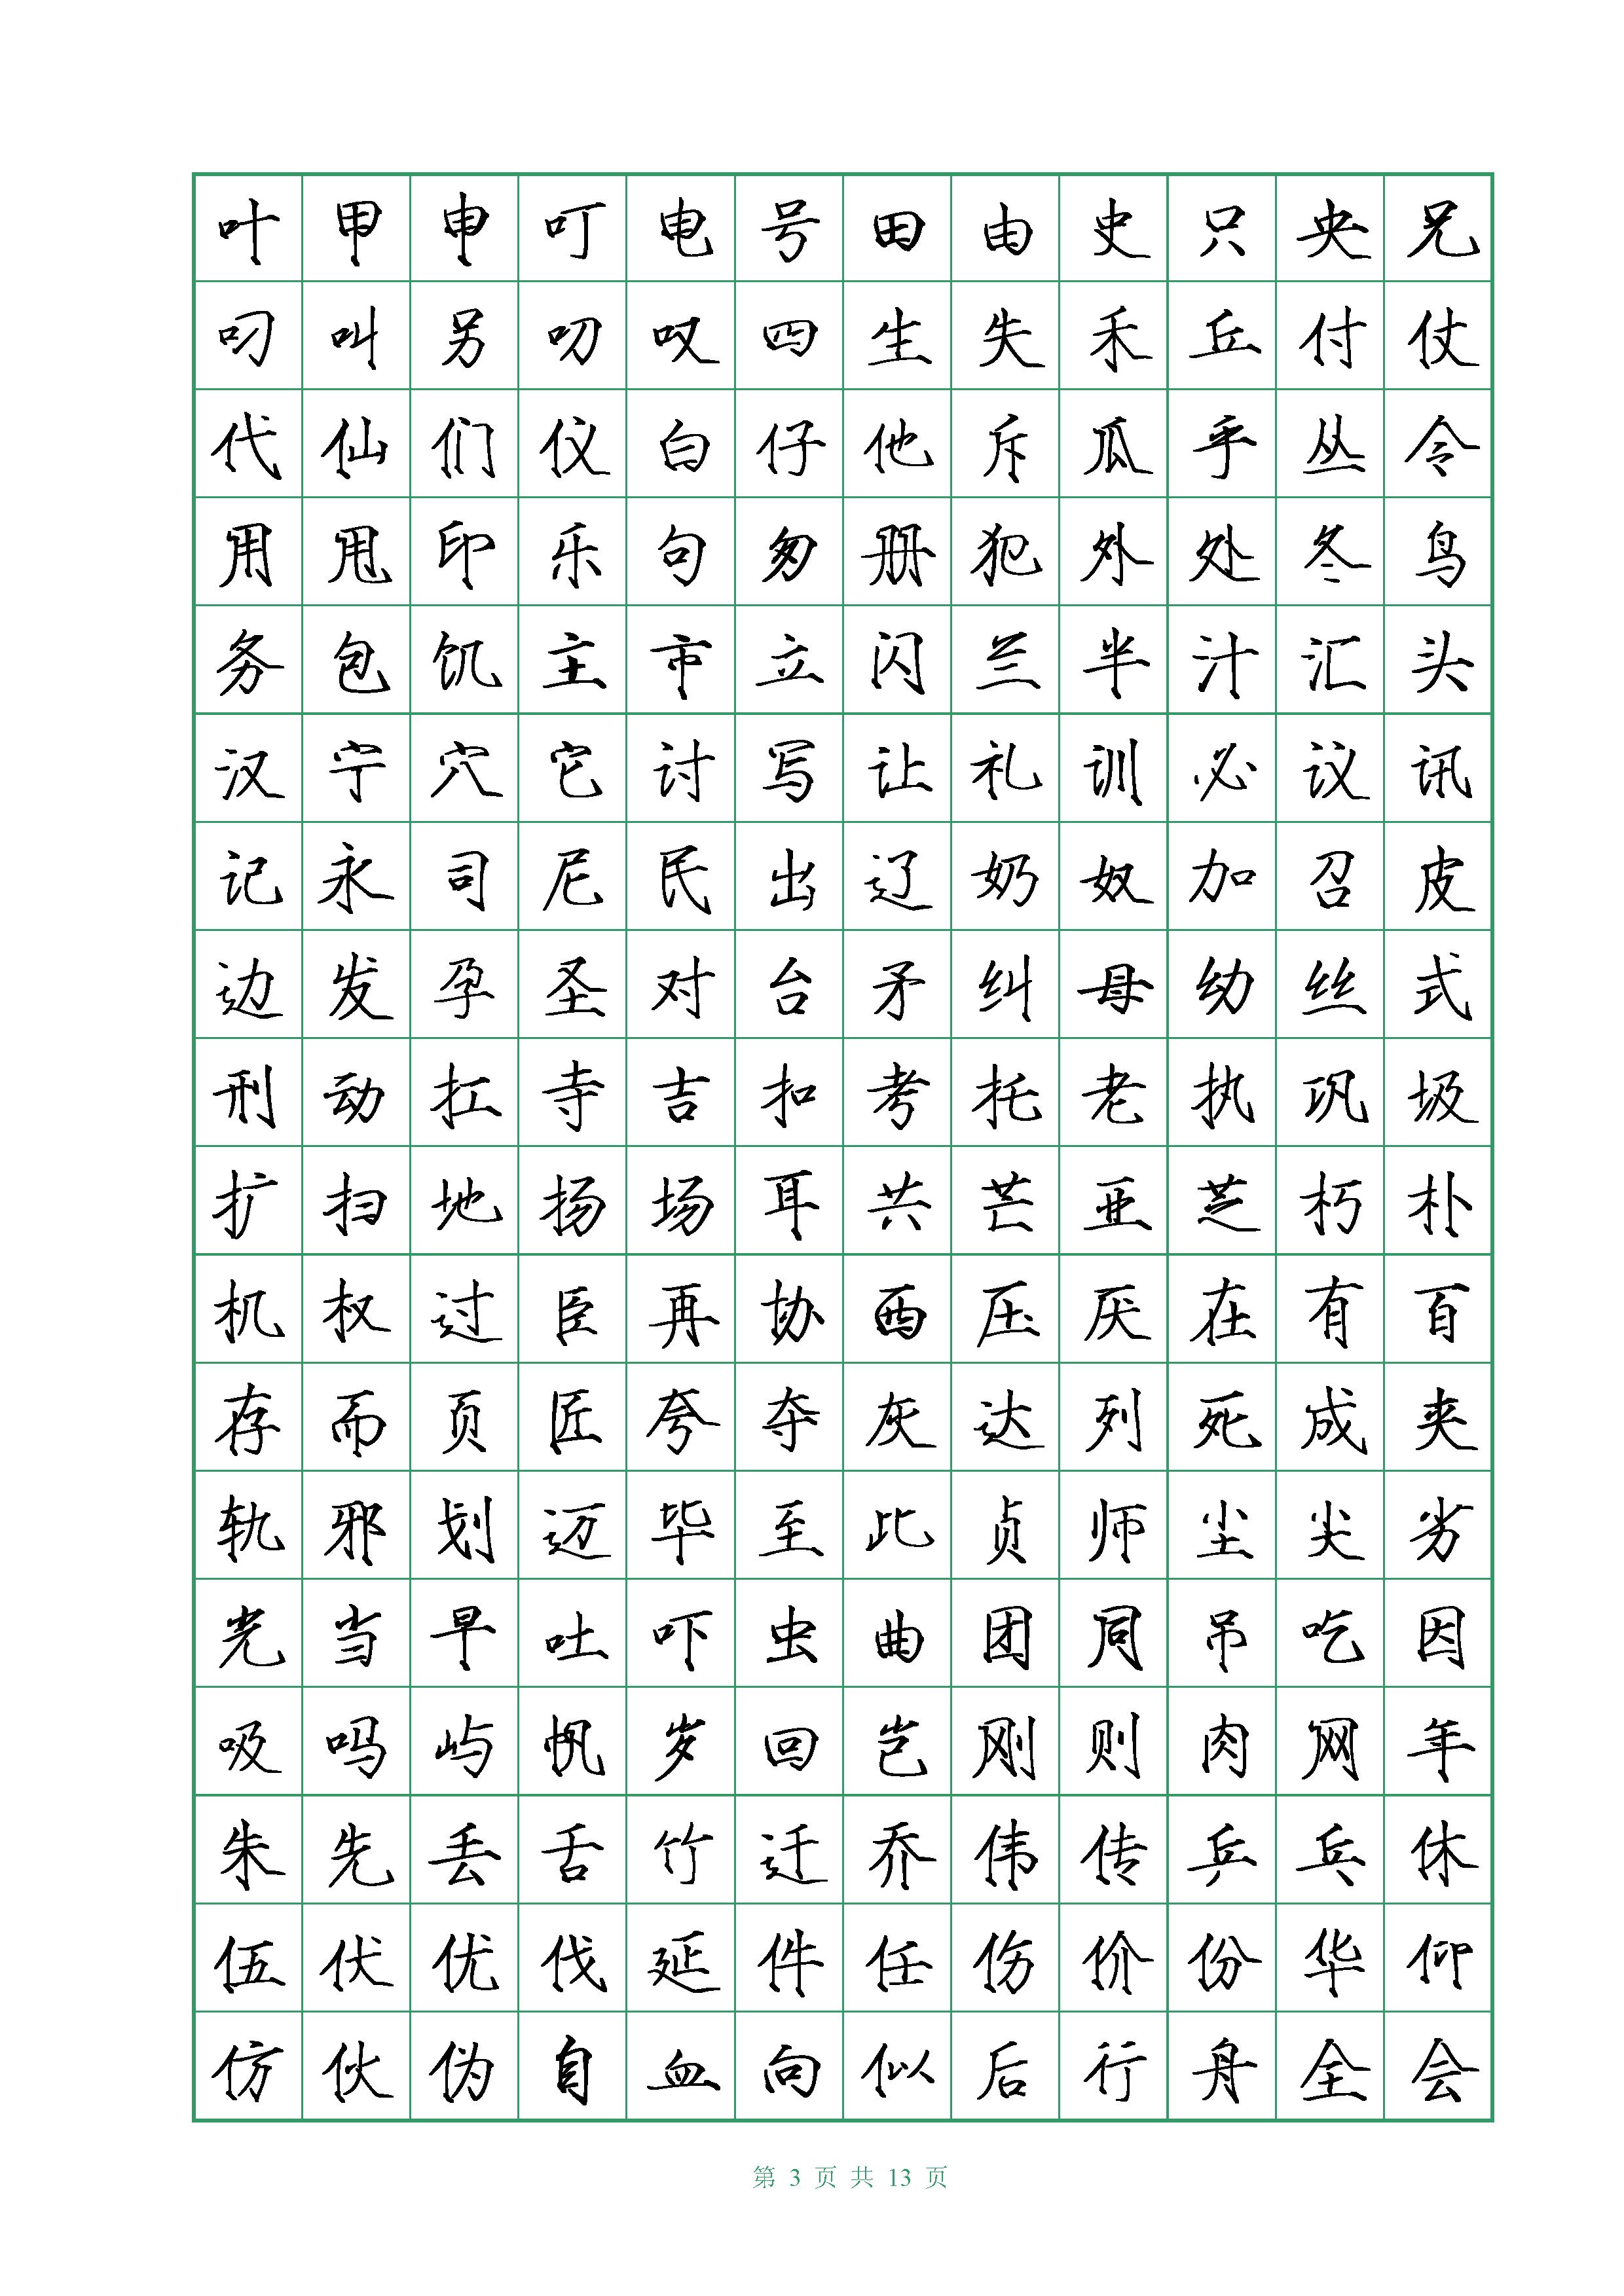 中小学生钢笔硬笔楷书字帖 罗成临摹描写 常用汉字3500字